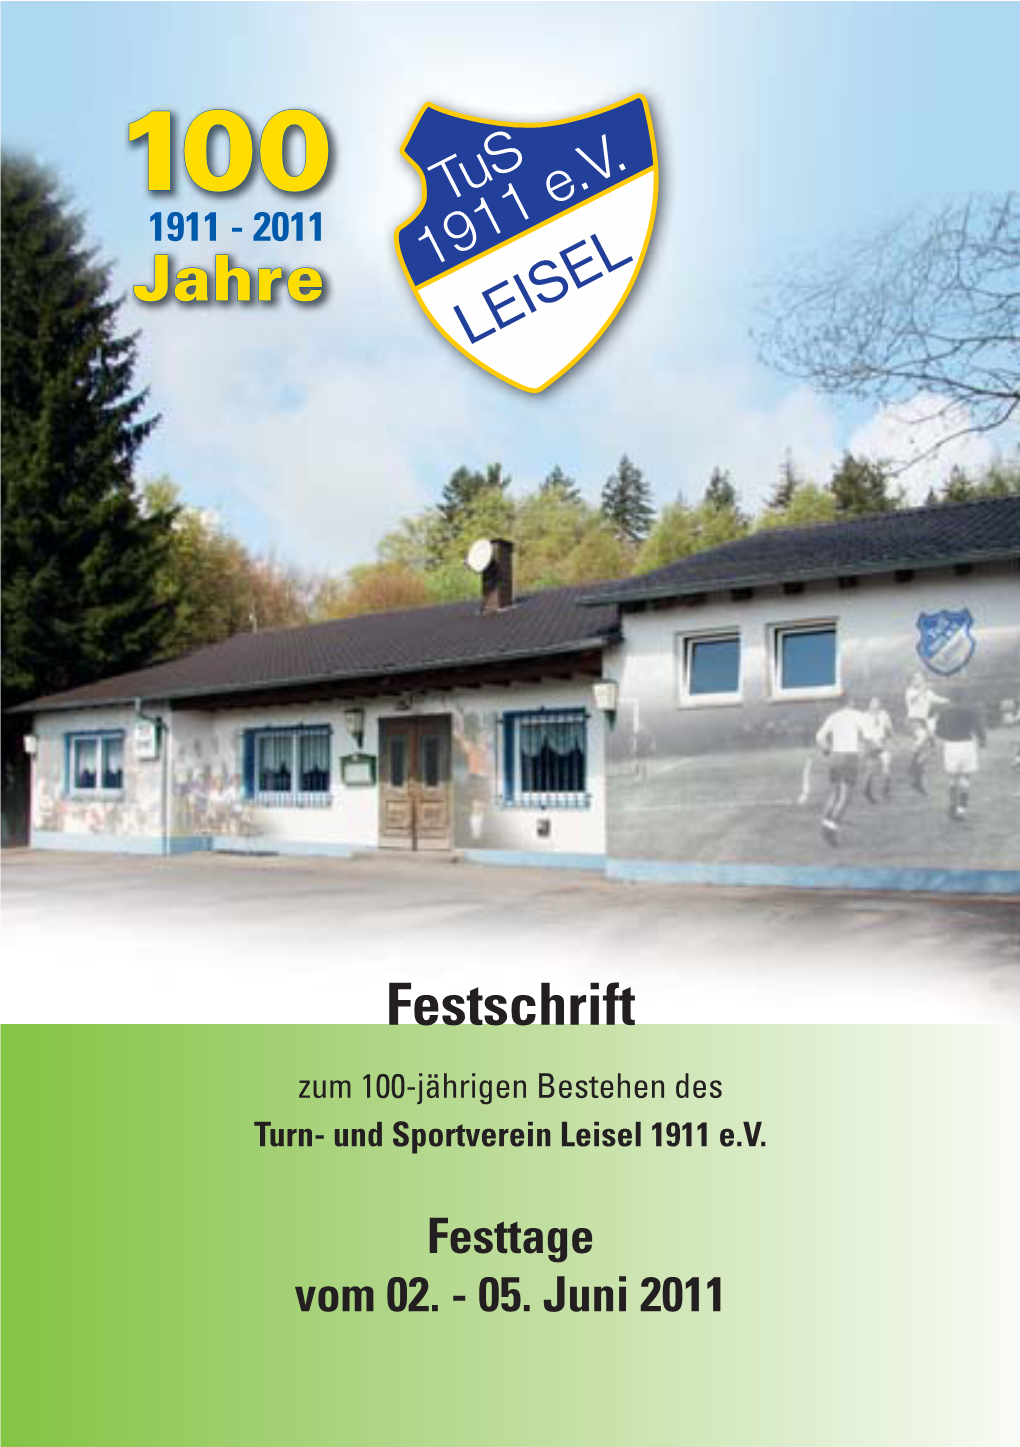 Festschrift Zum 100-Jährigen Bestehen Des Turn- Und Sportverein Leisel 1911 E.V